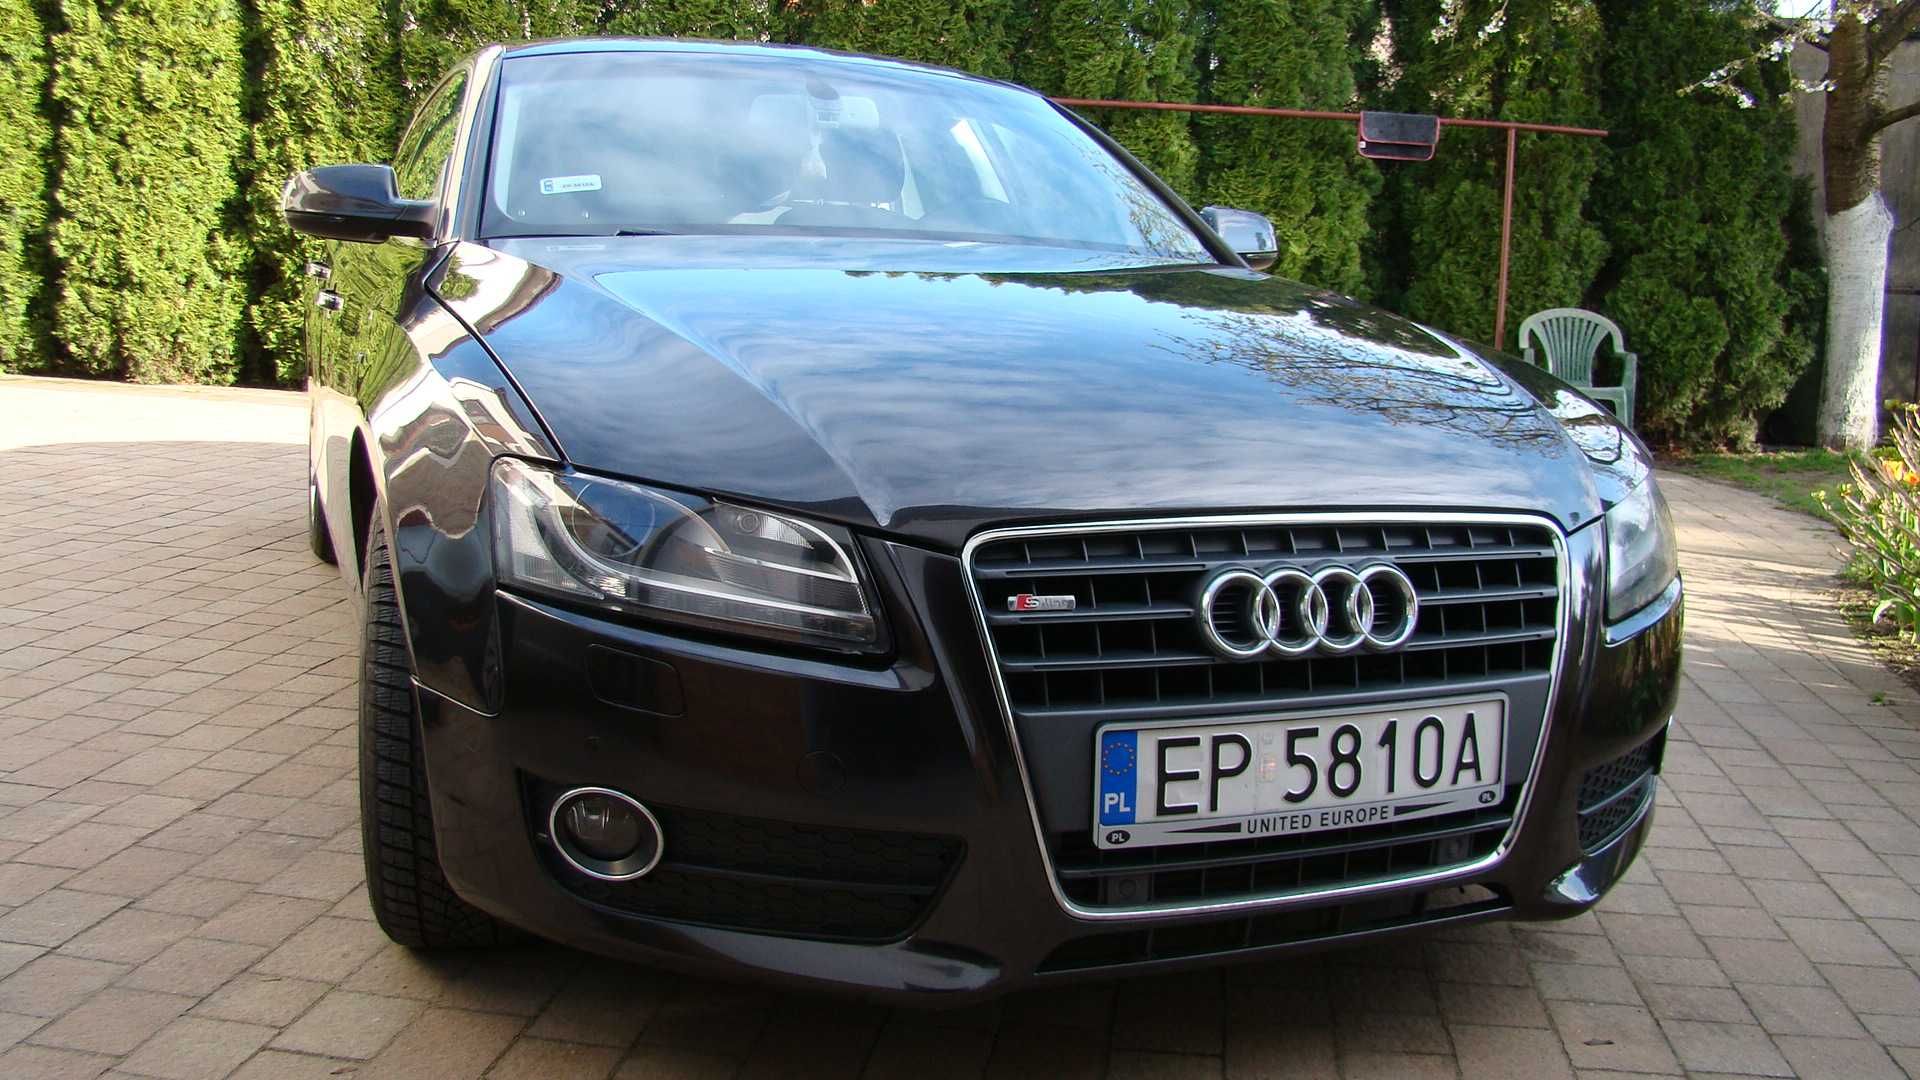 Audi A5, 2.0 diesel 143 KM. zadbany samochód, pierwszy właściciel